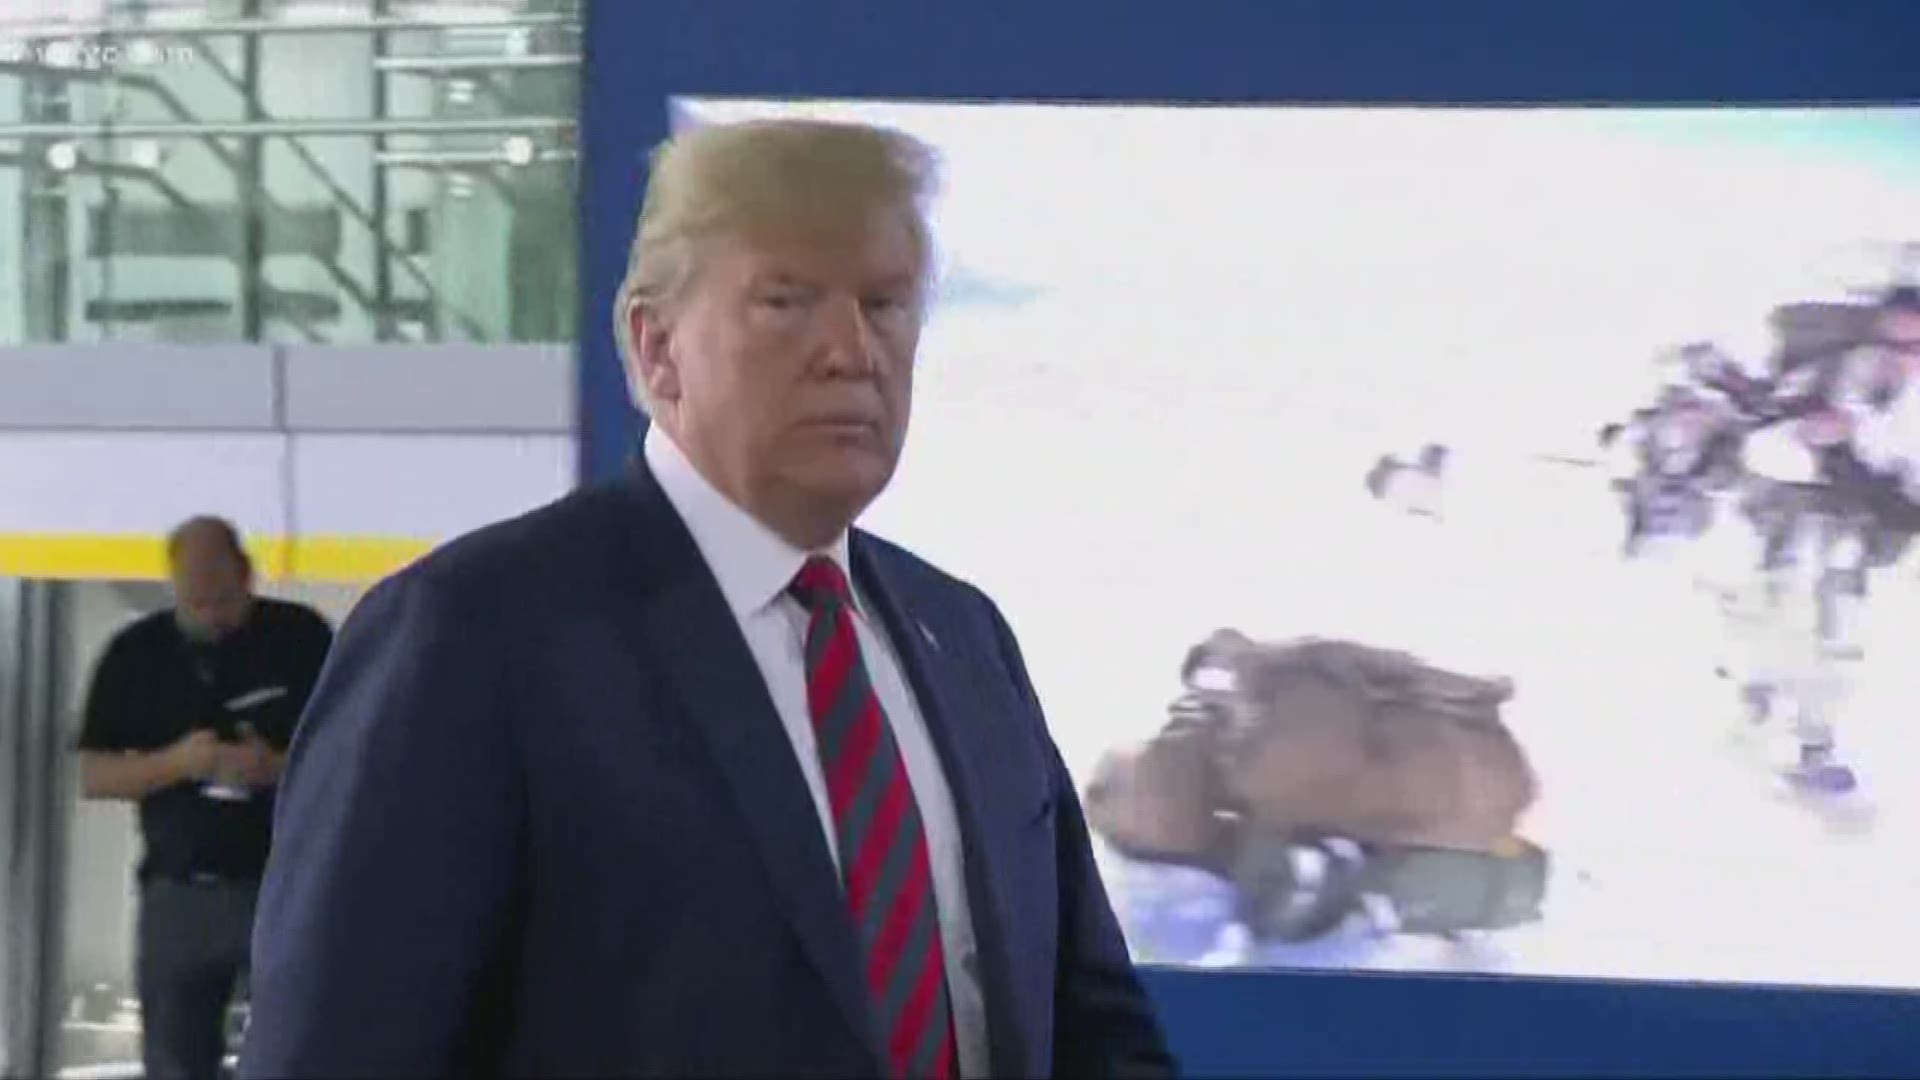 President Trump NATO Summit